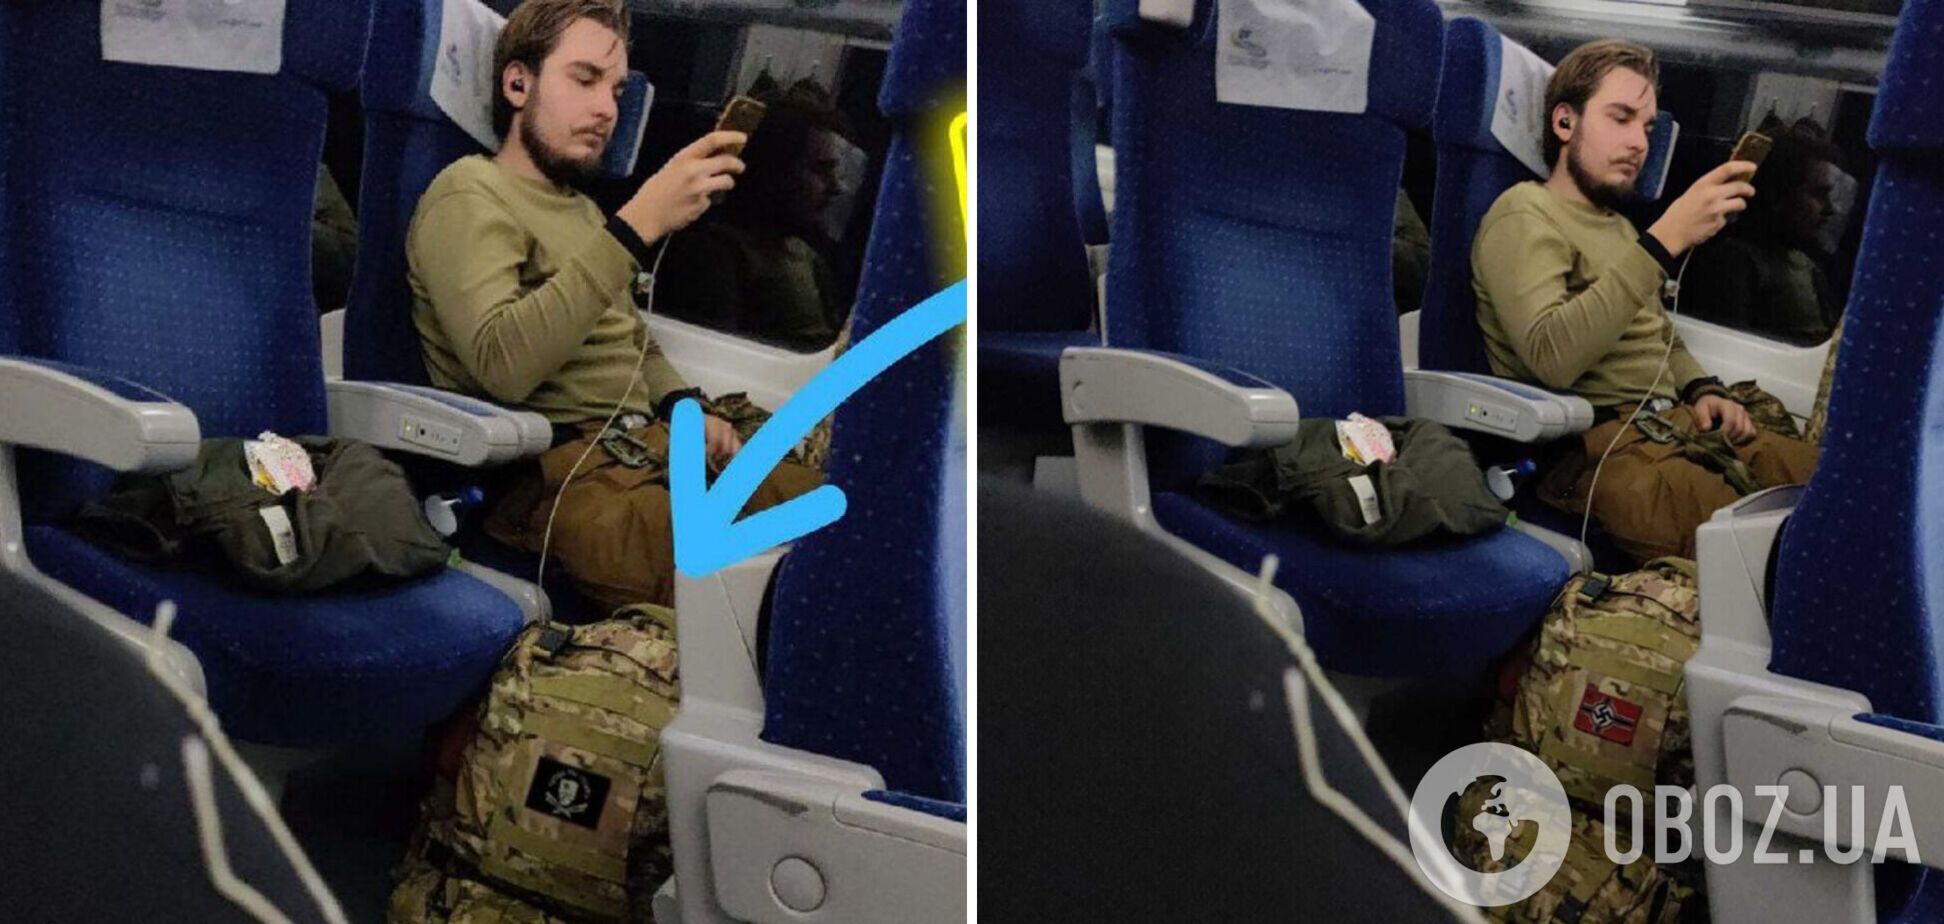 Ізраїльський аналітик опублікував фото військового зі свастикою на рюкзаку